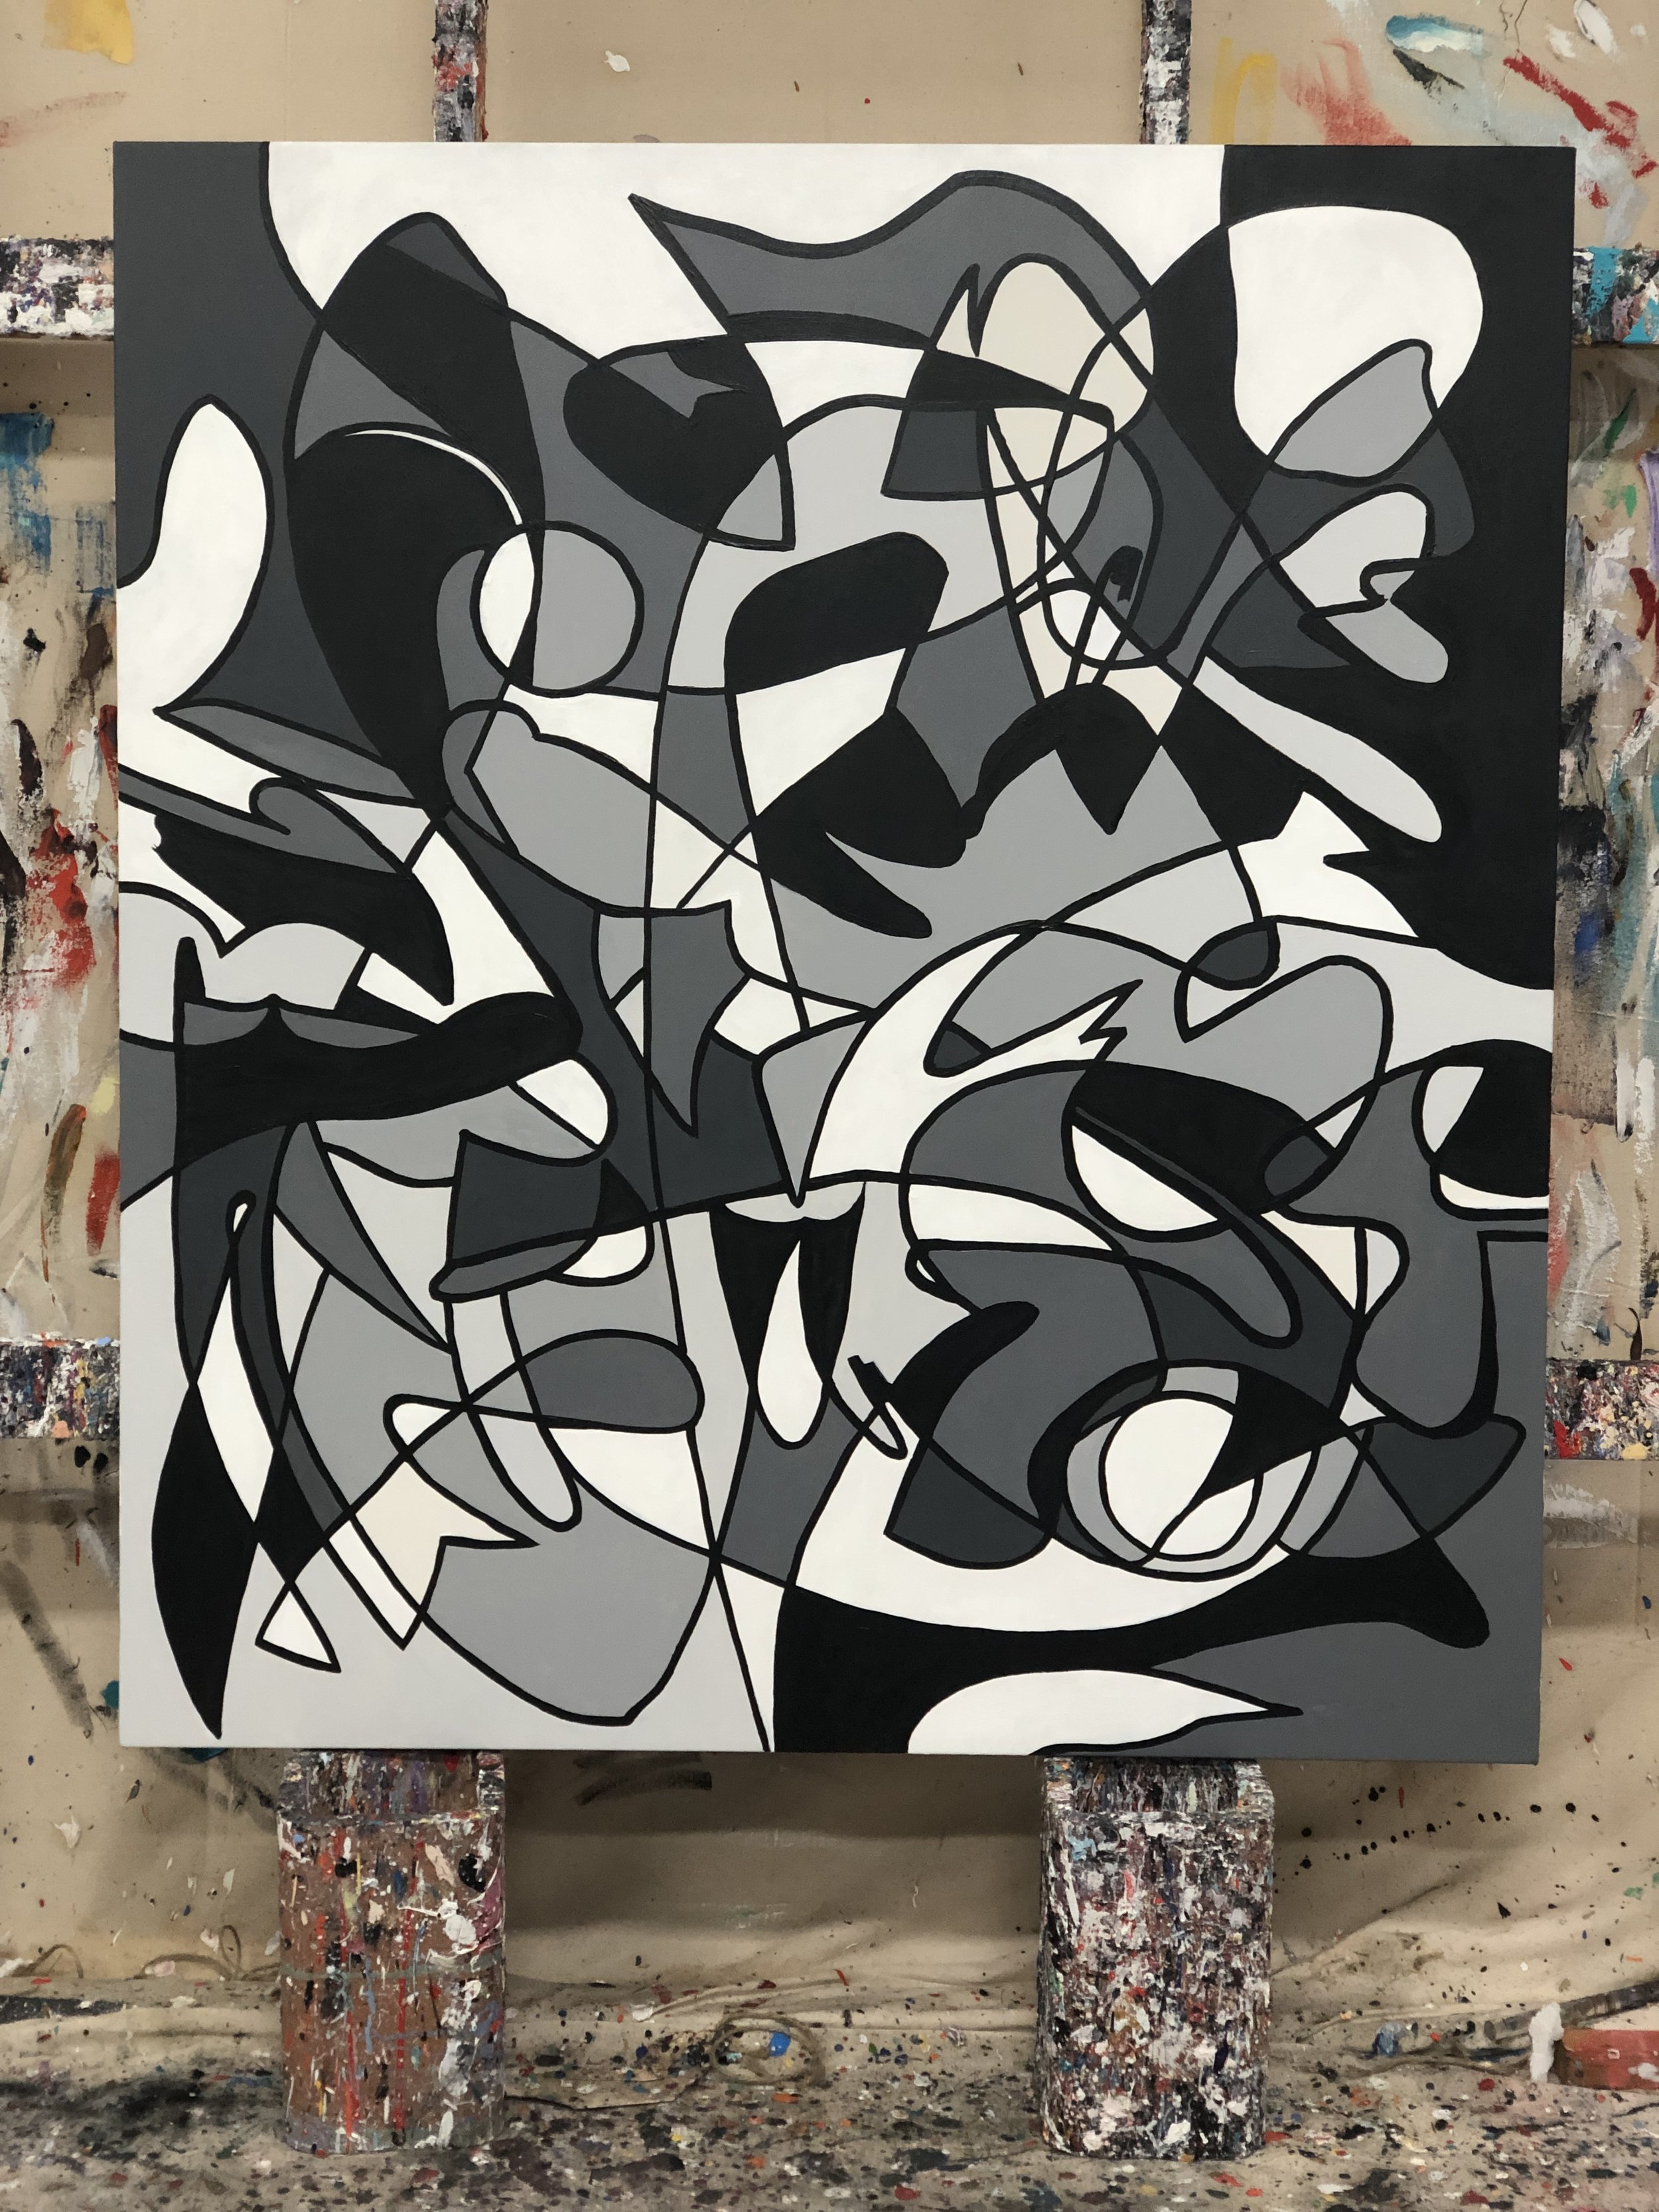  Acrylic on canvas 57” x 51” 